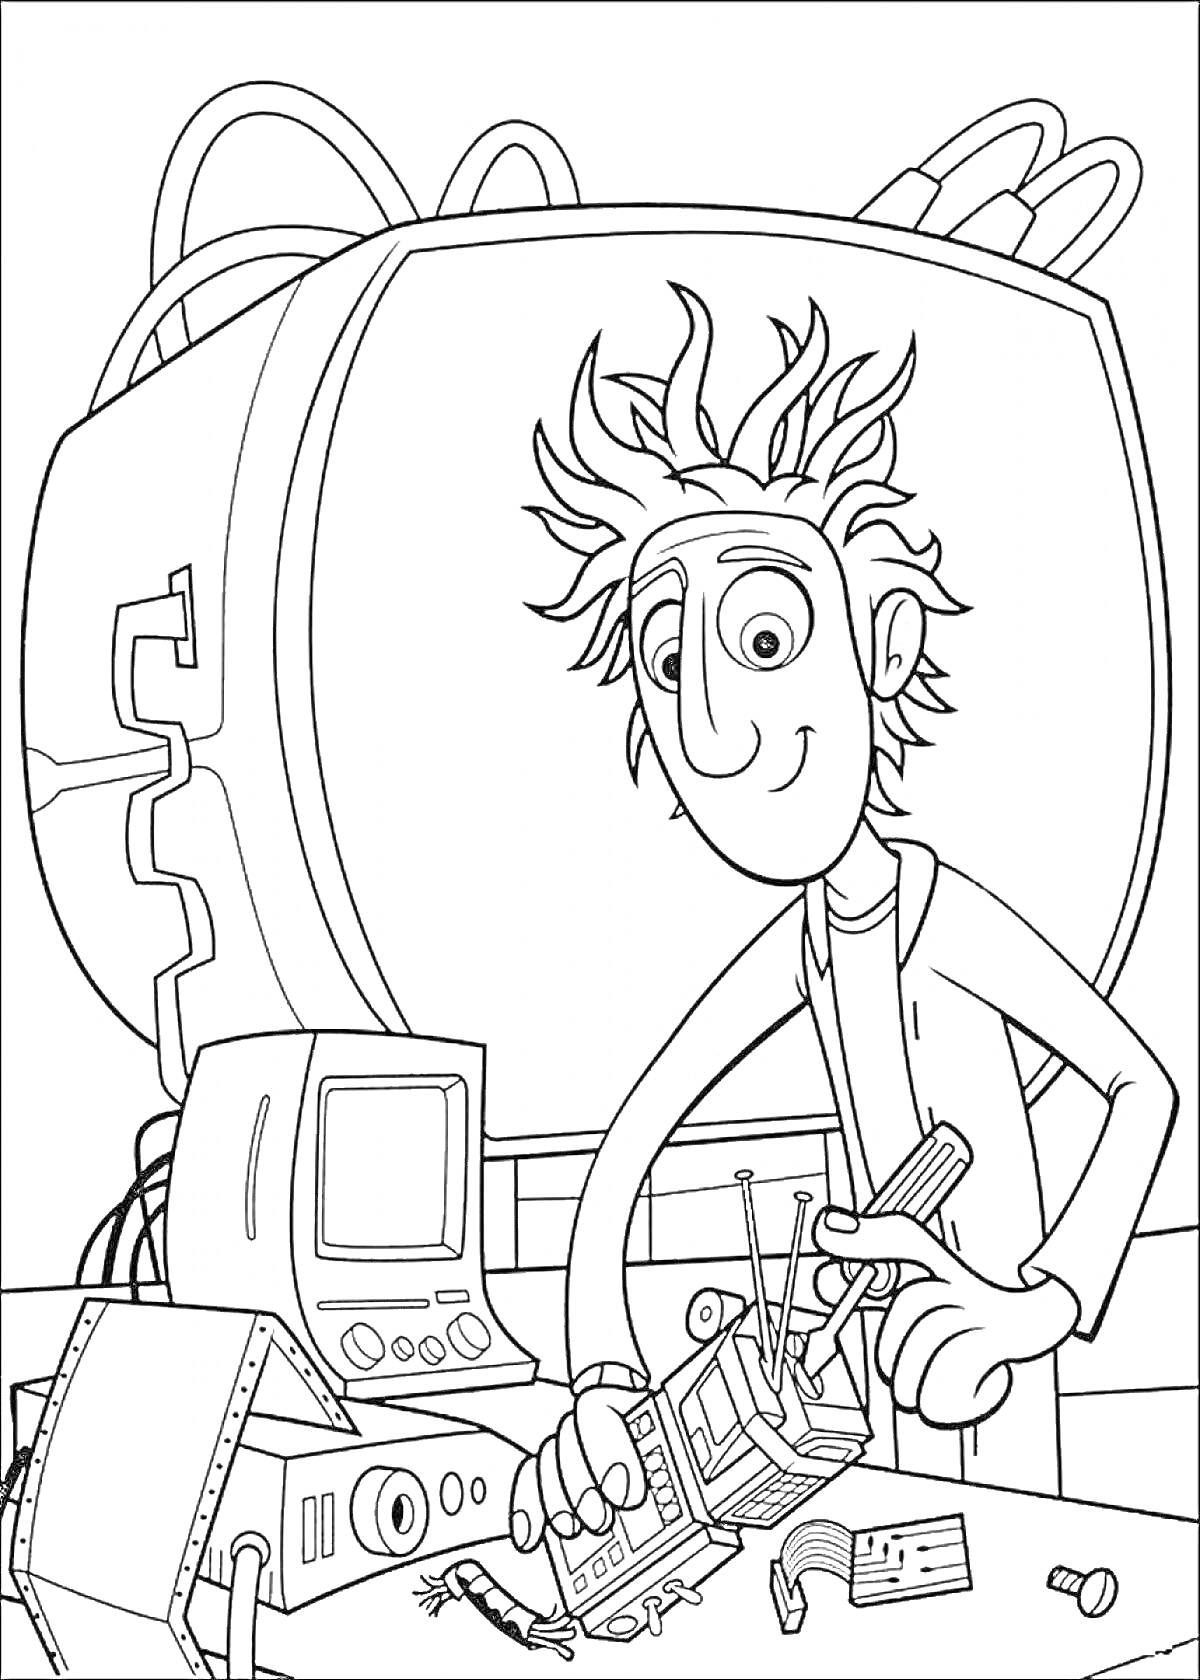 Человек с растрепанными волосами, работающий с электроникой на фоне большого устройства